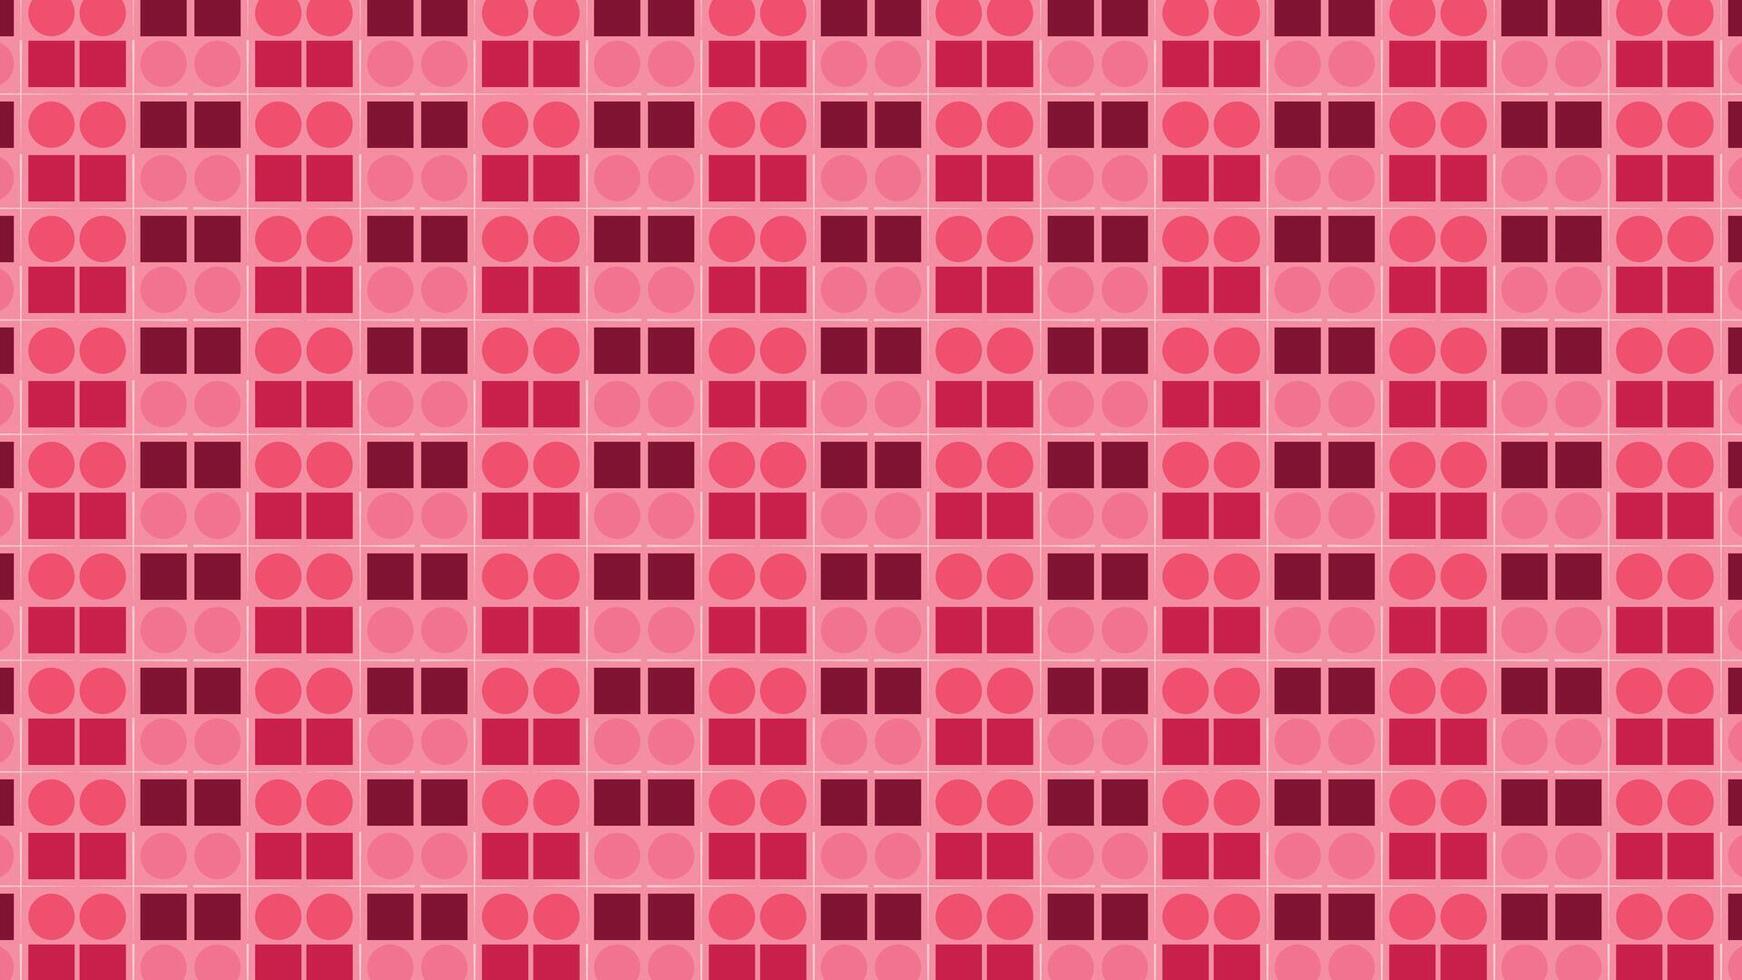 abstrato repetido quadra Rosa cor combinação padronizar fundo. vetor